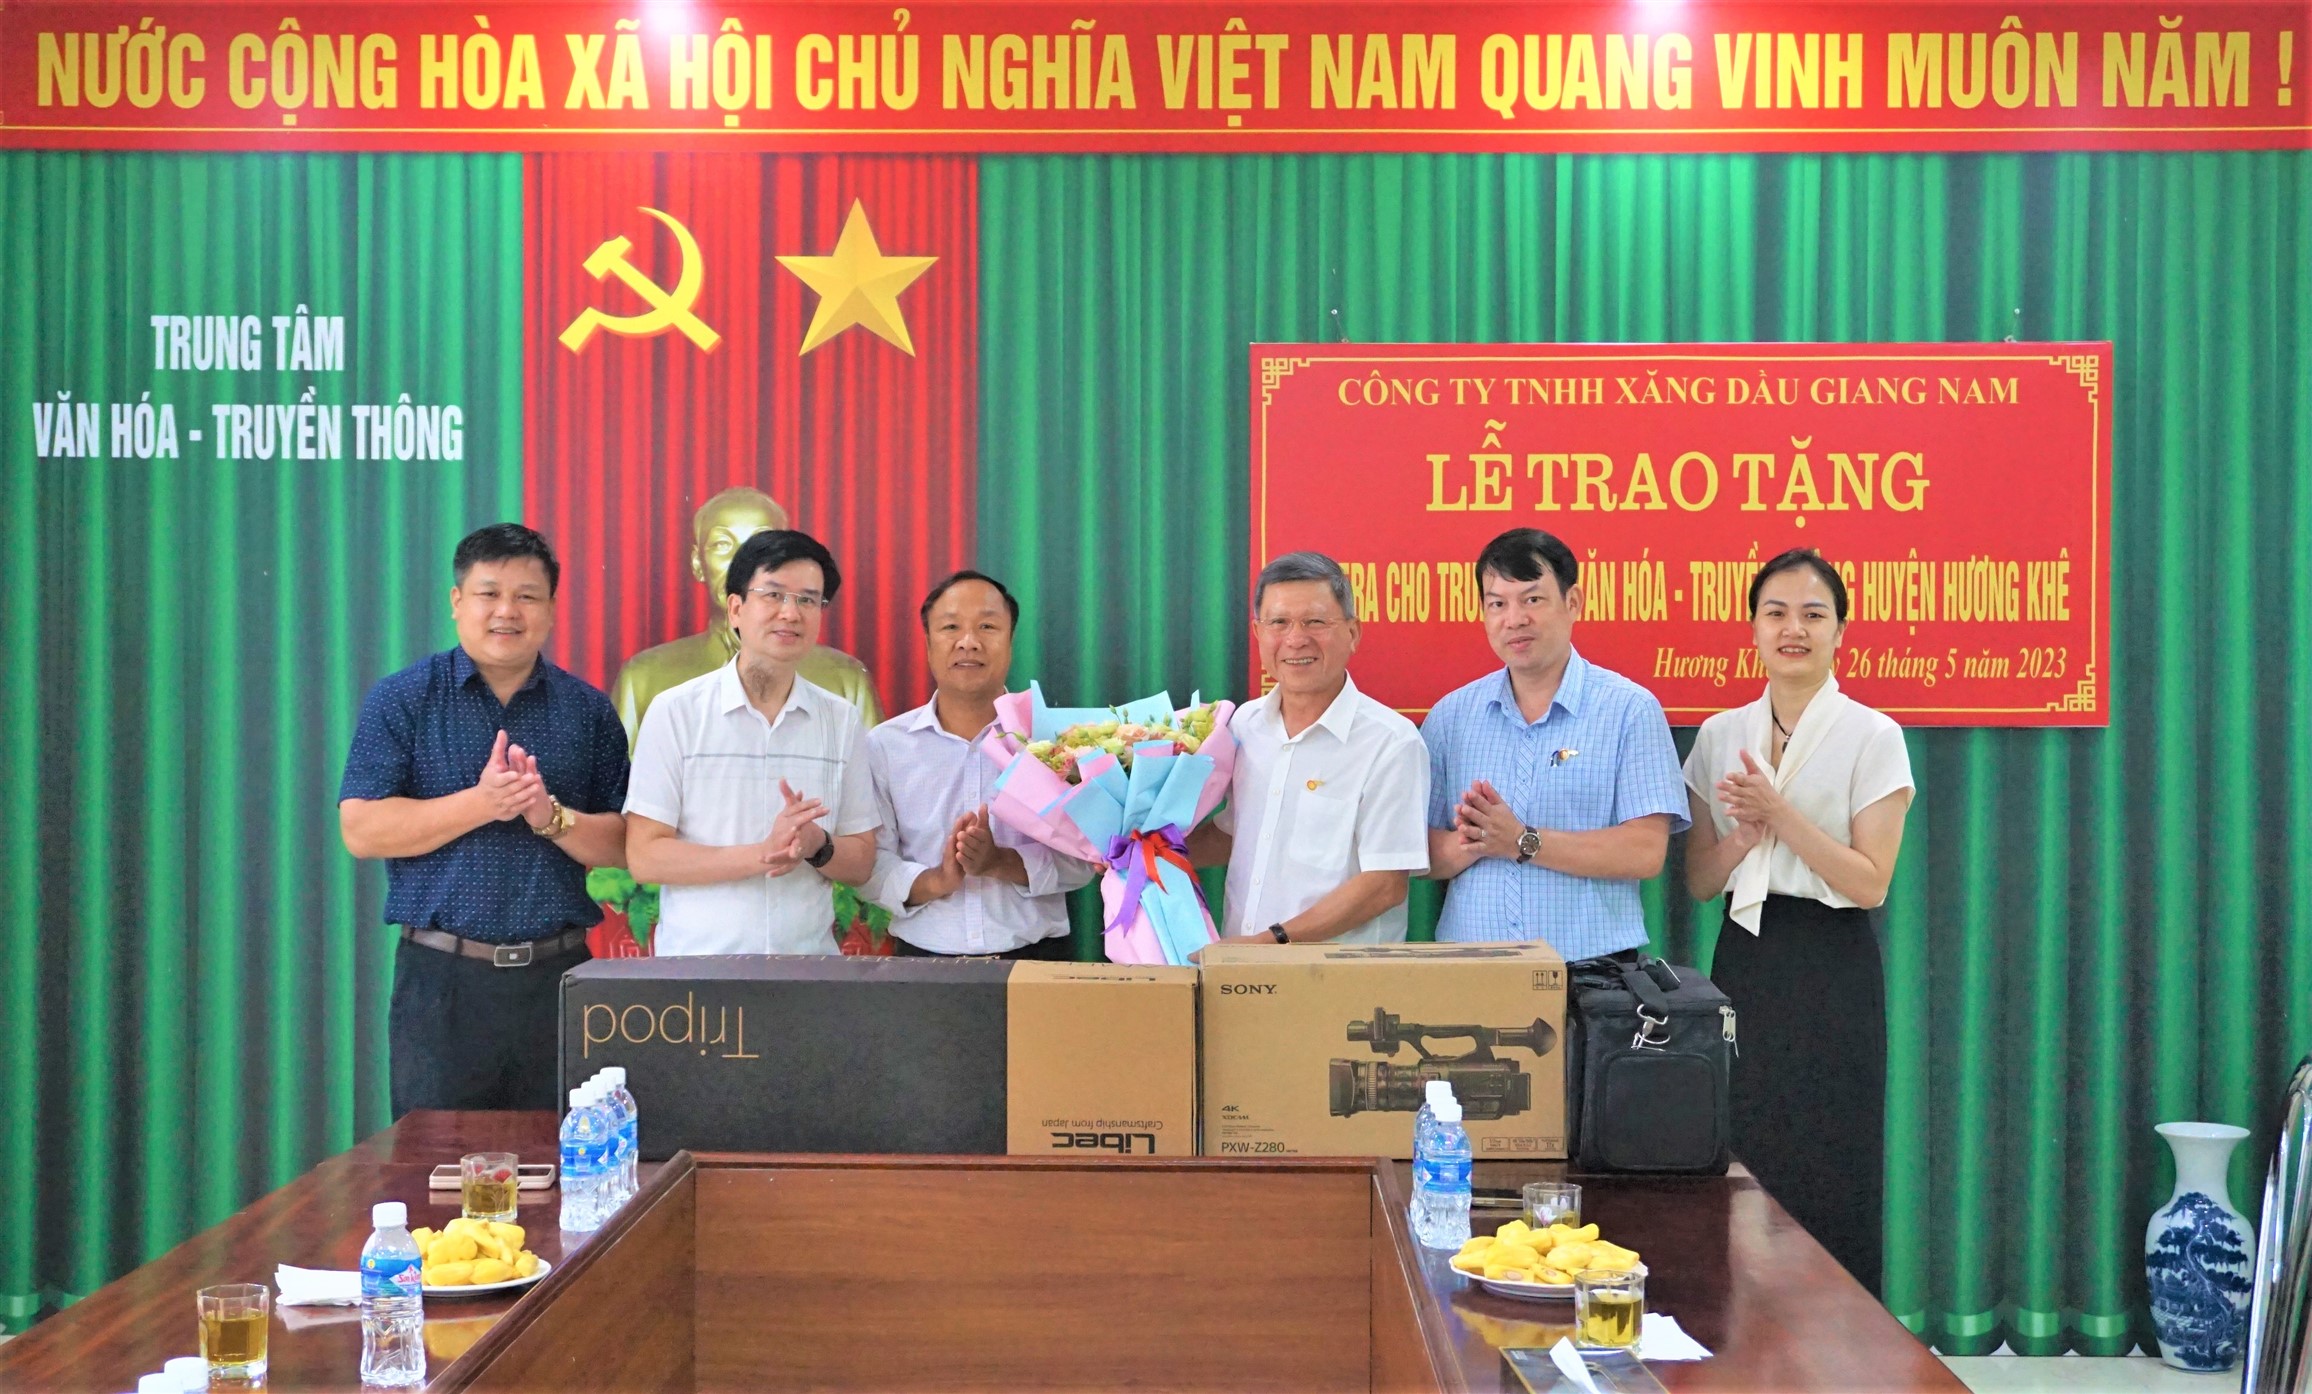 Công ty TNHH Xăng dầu Giang Nam trao tặng Camera cho Trung tâm VH-TT Hương Khê